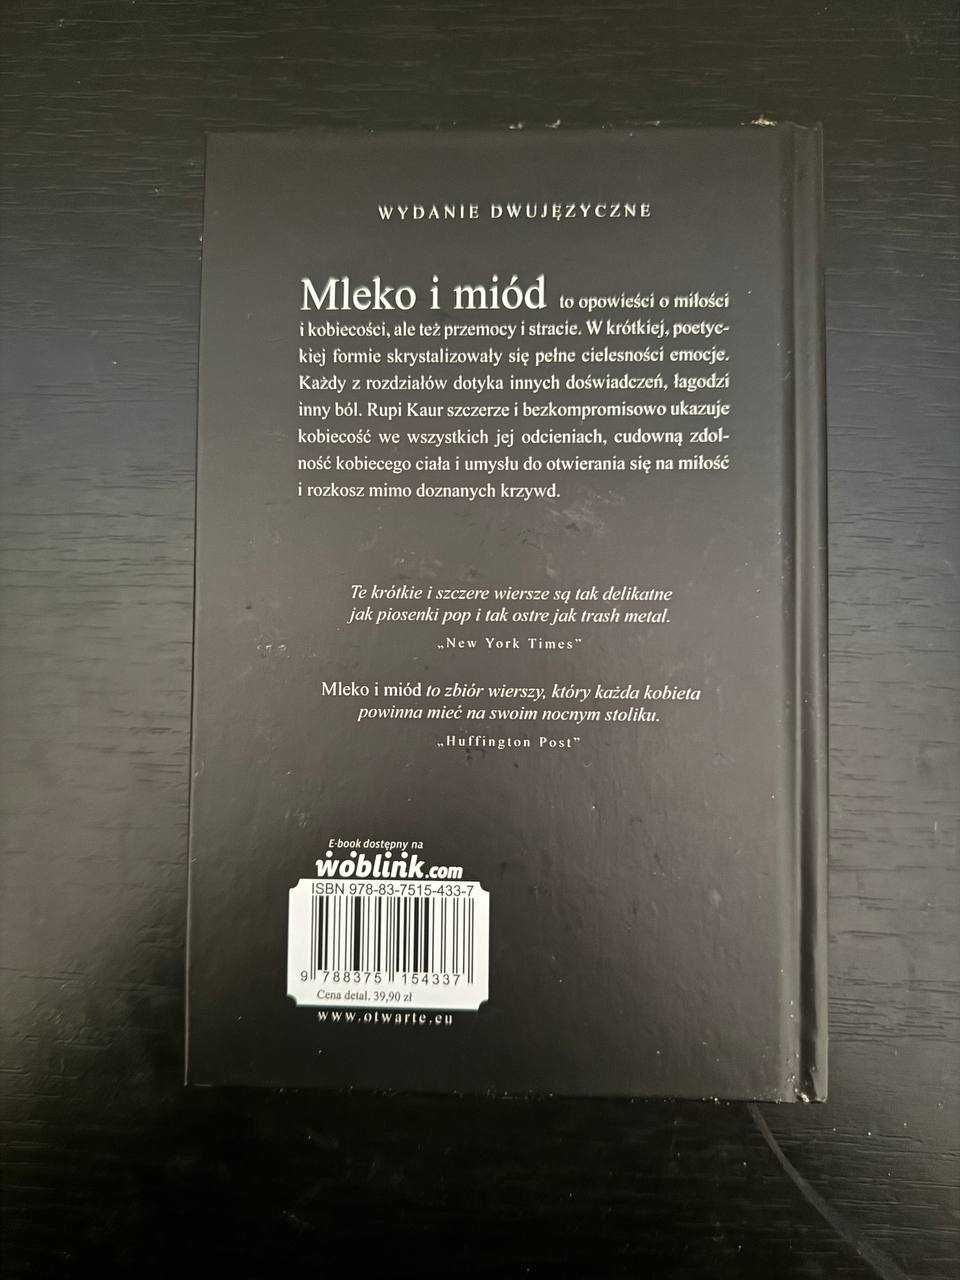 Продаю книгу "Молоко і мед" польською та англіською мовами